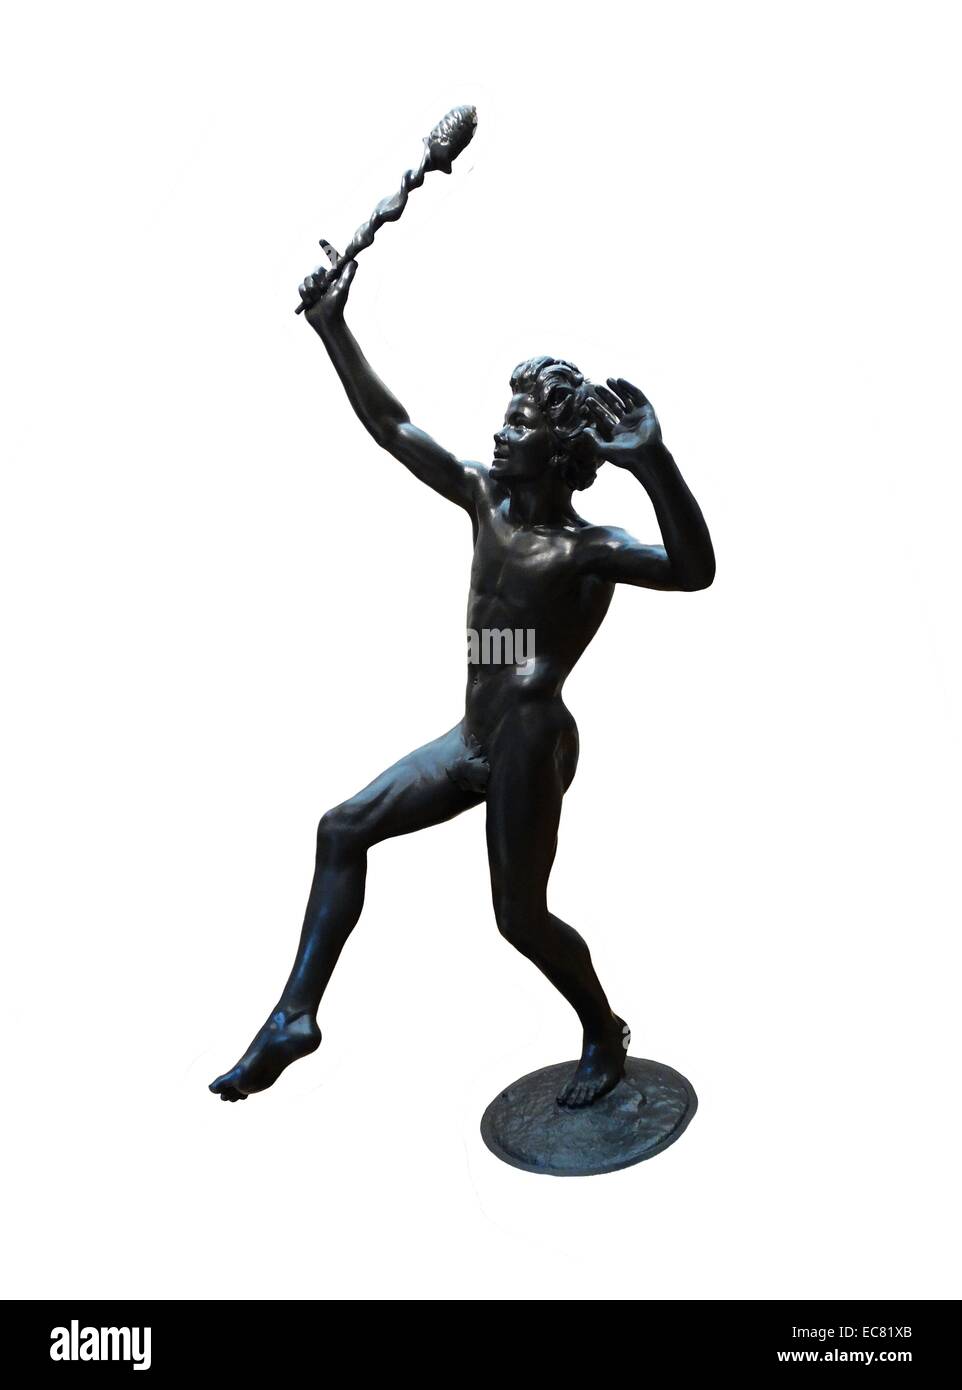 El baile Faun; la estatua de bronce de la fundición de tusey forestales 1832-1861. faunos eran dioses o diosas de la mitología romana a menudo asociada con bosques encantados y el dios griego Pan y su sátiros. Foto de stock